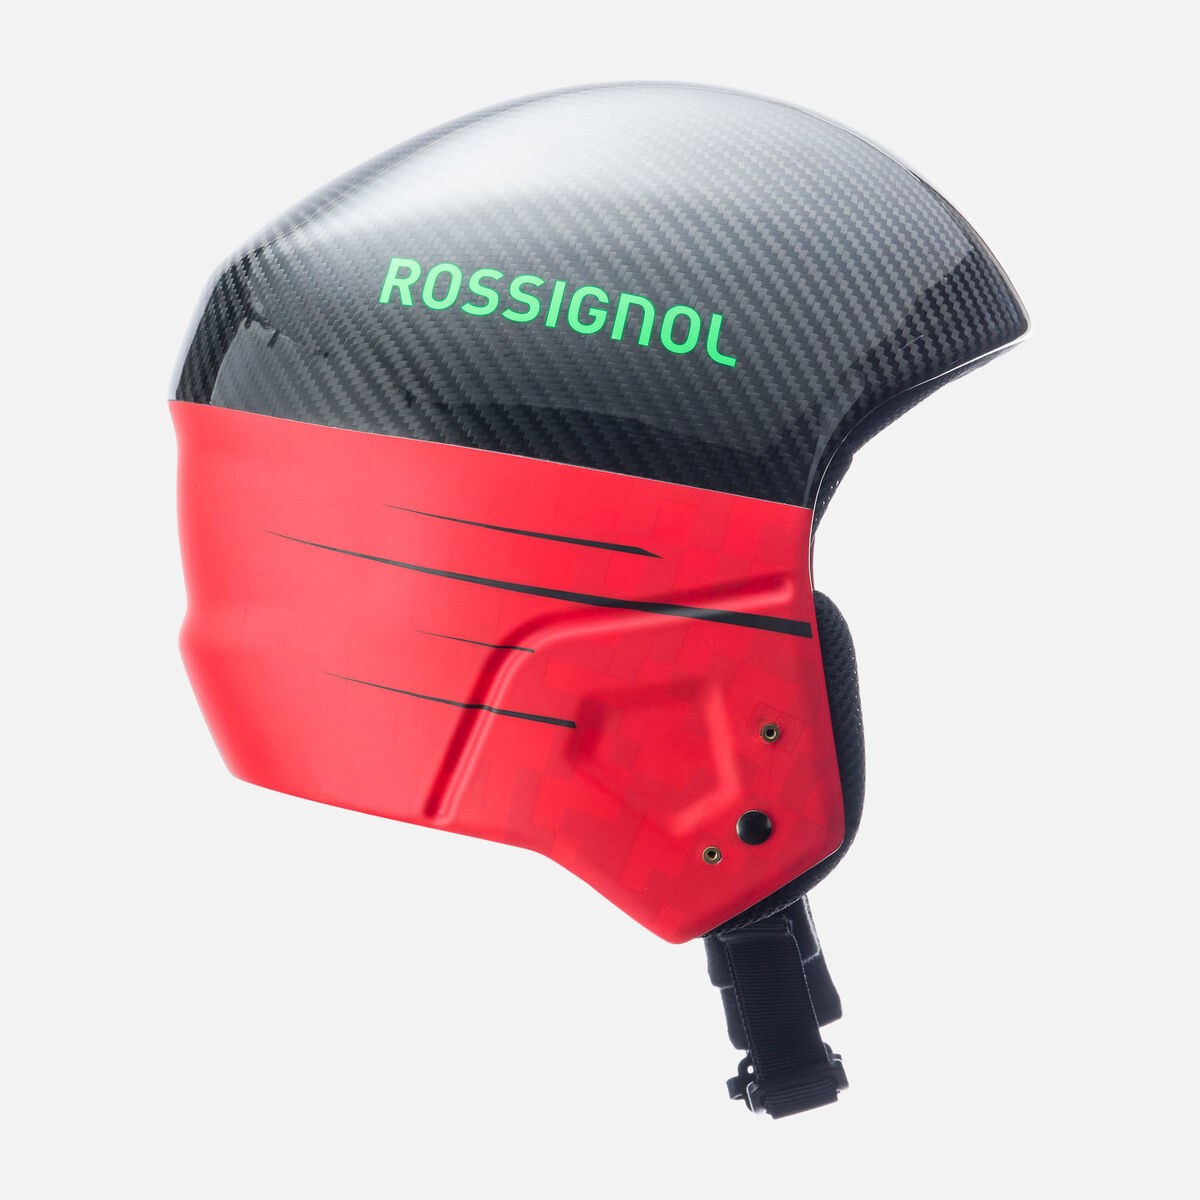 Unisex Helmet  Hero Giant Carbon FIS